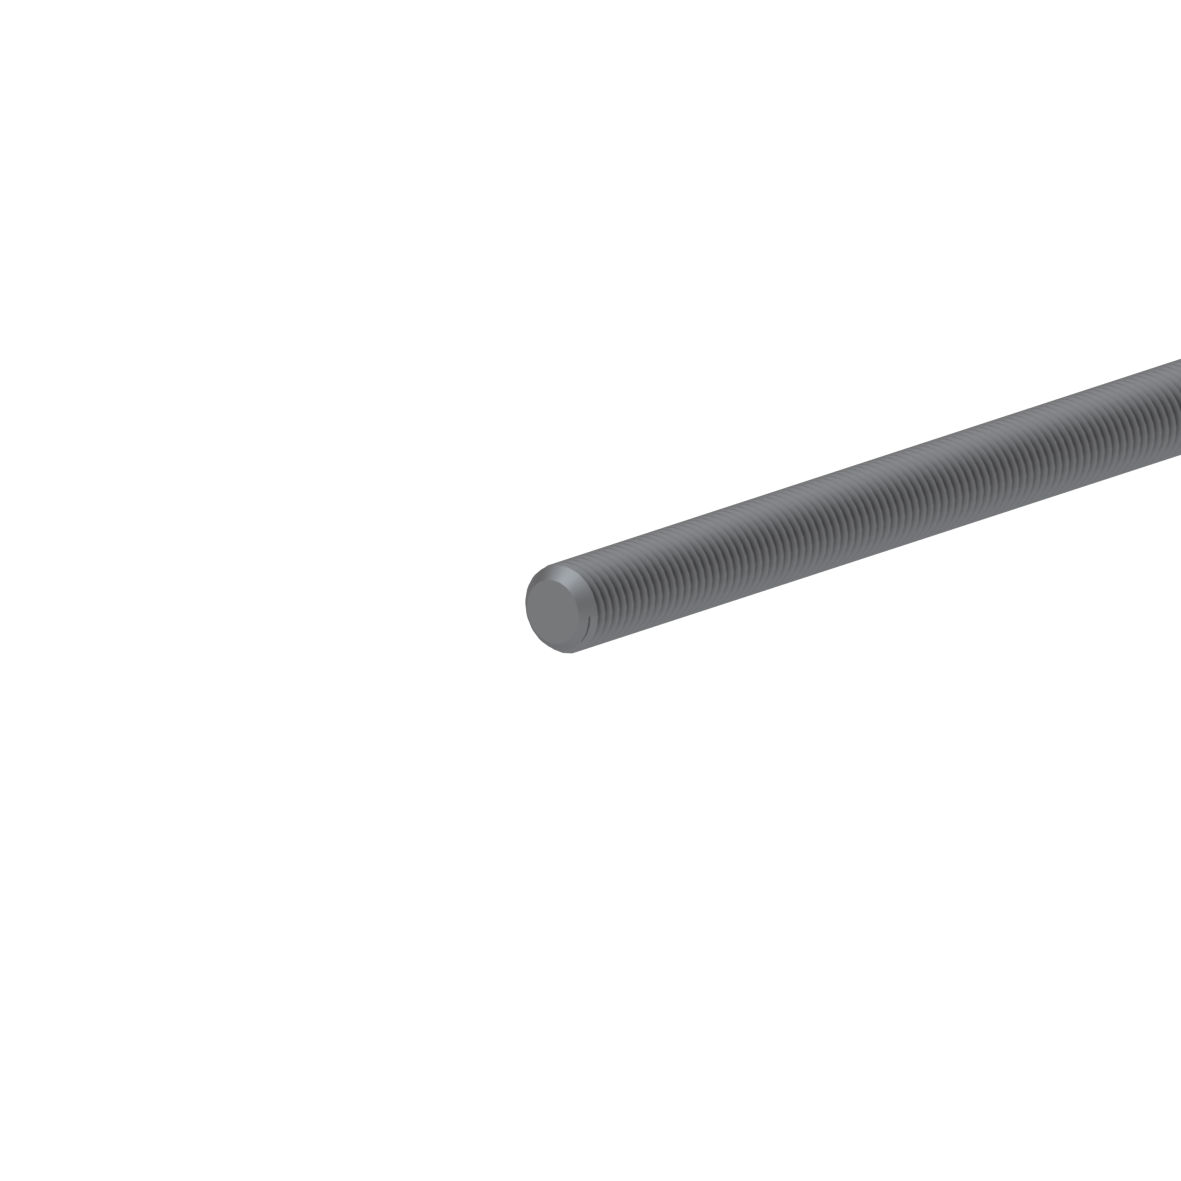 Threaded rod, L = 2000 mm, Colourless